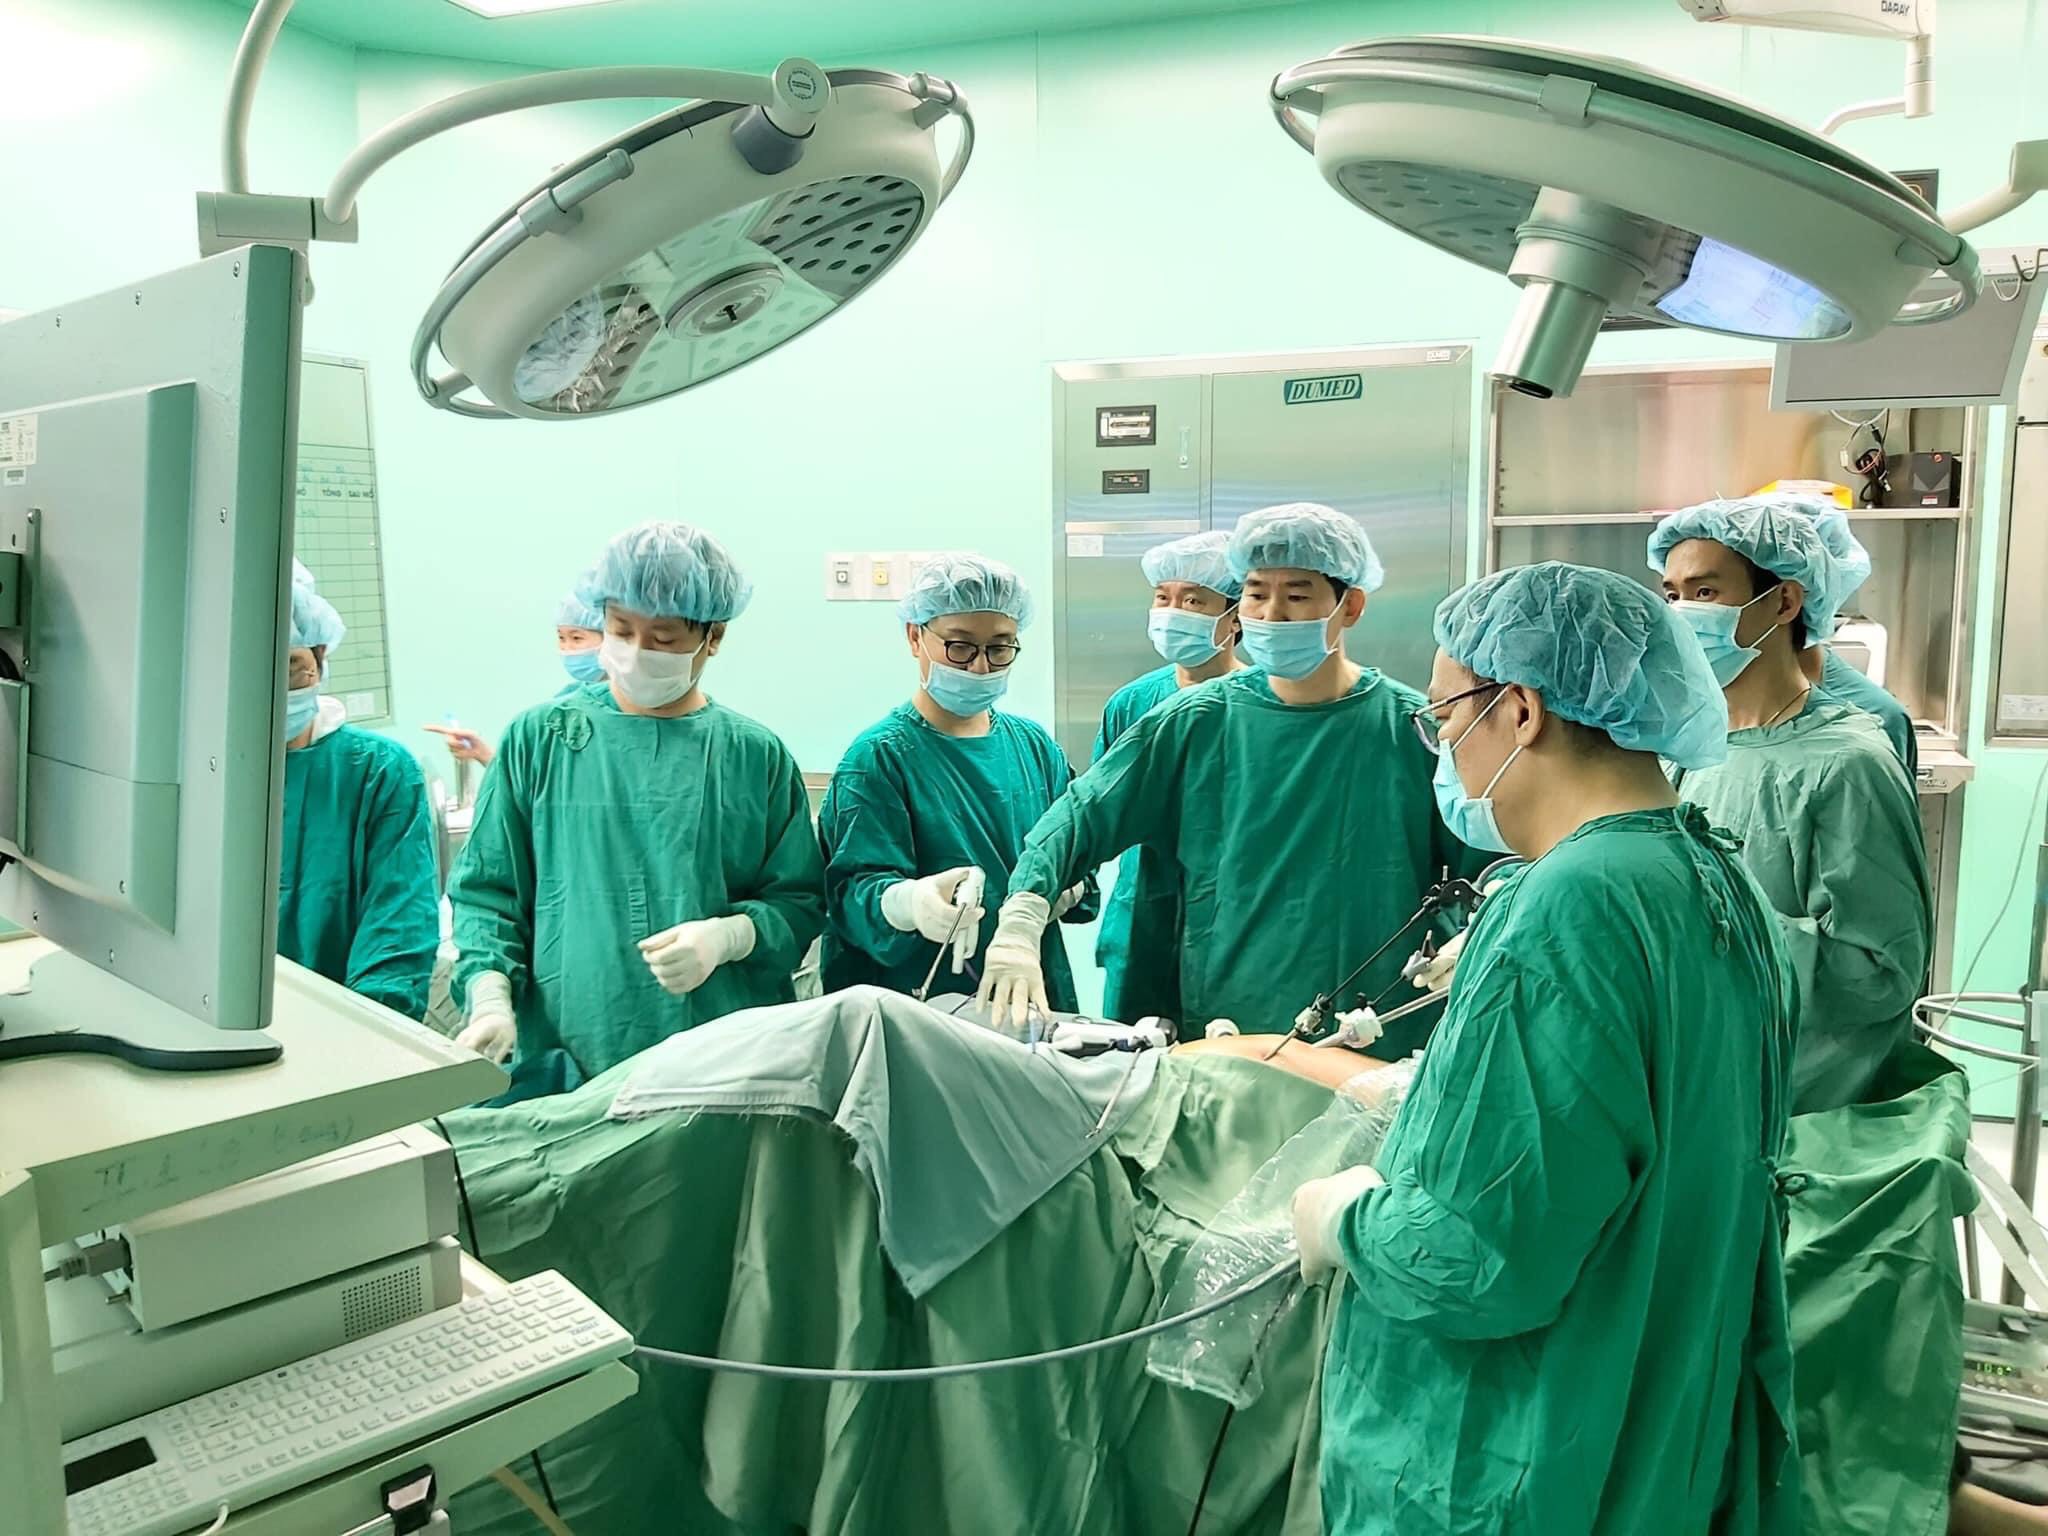 Bác sĩ Lâm Việt Trung, Trưởng Khoa Ngoại Tiêu hóa, BV Chợ Rẫy tham gia cùng êkip bác sĩ BV Bà Rịa  phẫu thuật nội soi cắt đại tràng cho bệnh nhân tại BV Bà Rịa.